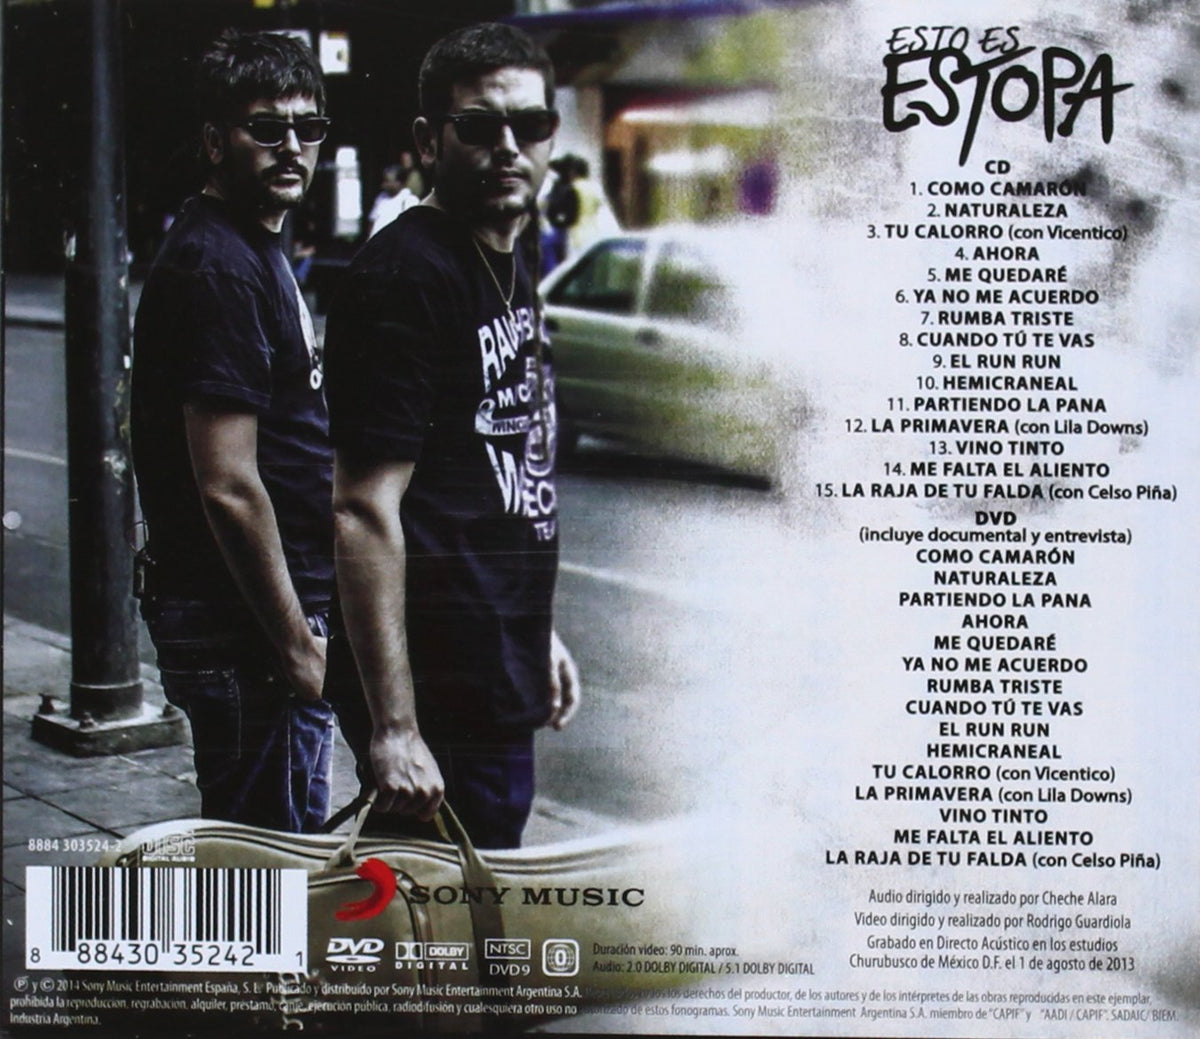 ESTOPA - Estopía CD + Póster + Pegatina Exclusiva – Black Vinyl Records  Spain